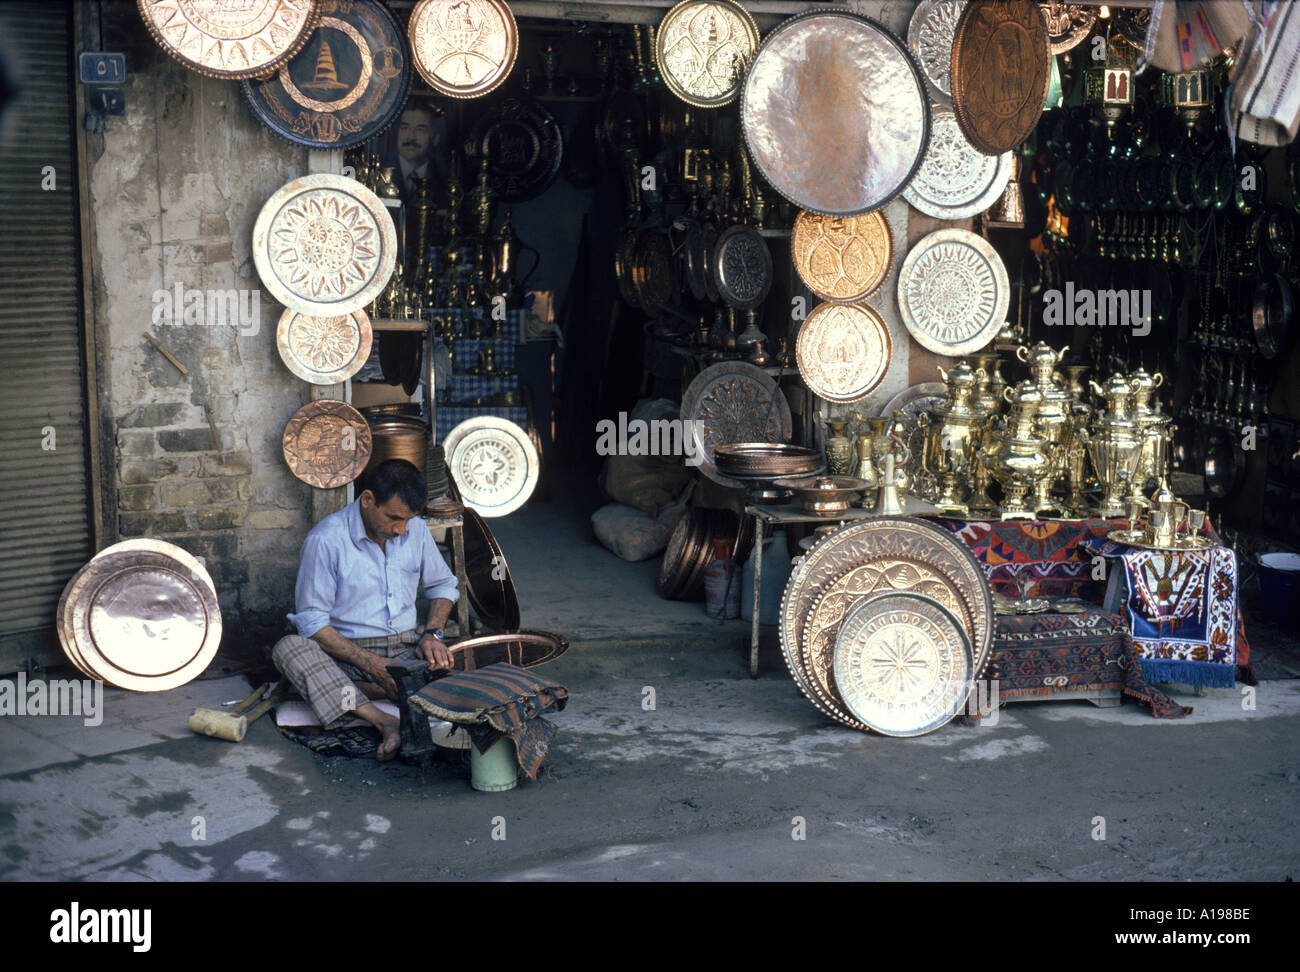 L'homme travaillant sur la plaque de cuivre à l'extérieur d'un souk du cuivre Bagdad Iraq Moyen-orient V l'arrêt Theakston Banque D'Images